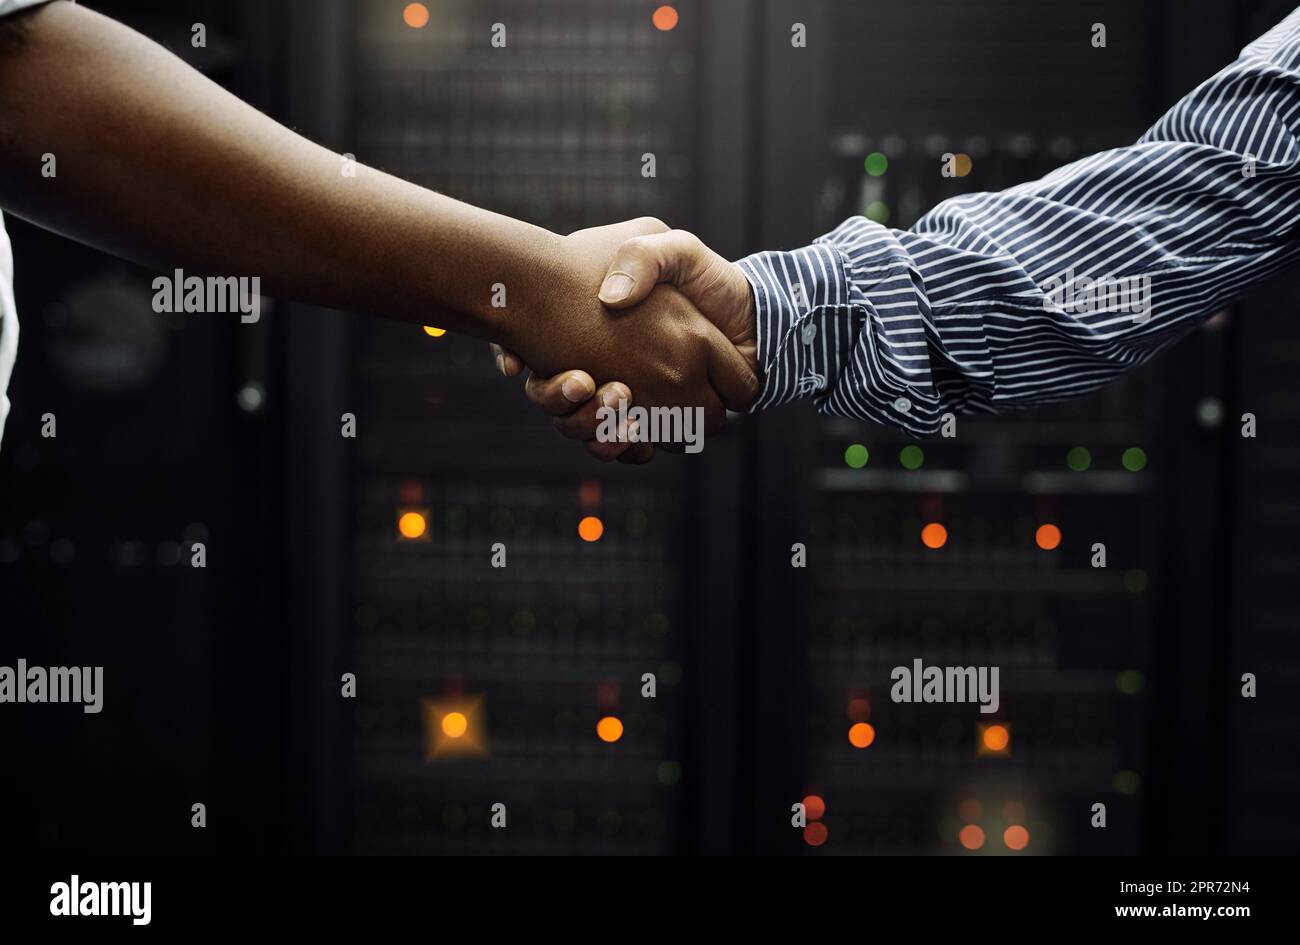 Gepaart für professionellen IT-Service. Eine kurze Aufnahme von zwei unkenntlichen Männern, die sich vor einem Server in einem Rechenzentrum die Hände schüttelten. Stockfoto